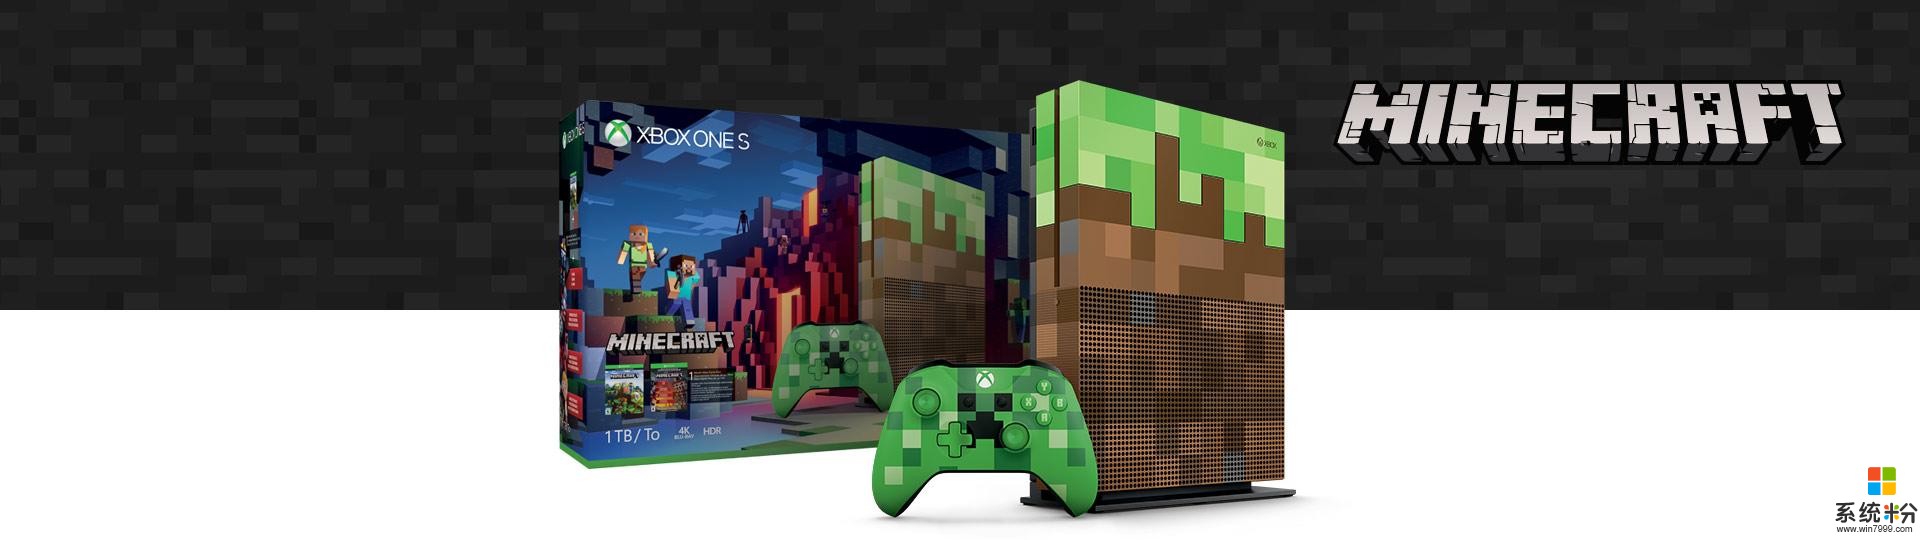 微軟將推《我的世界》特別版Xbox One S主機(1)